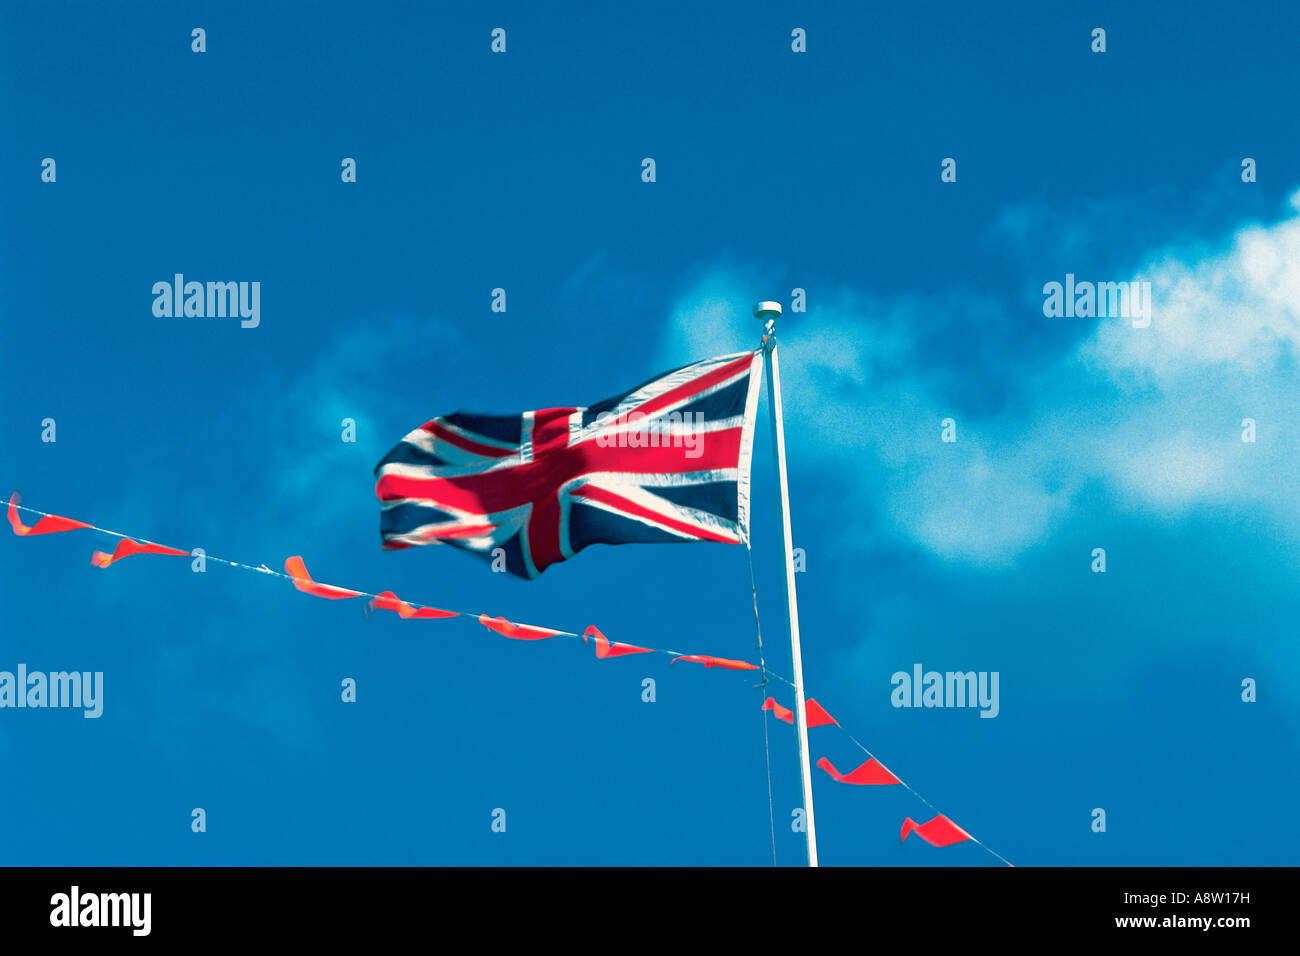 United Kingdom. National flag. Union Jack. Stock Photo